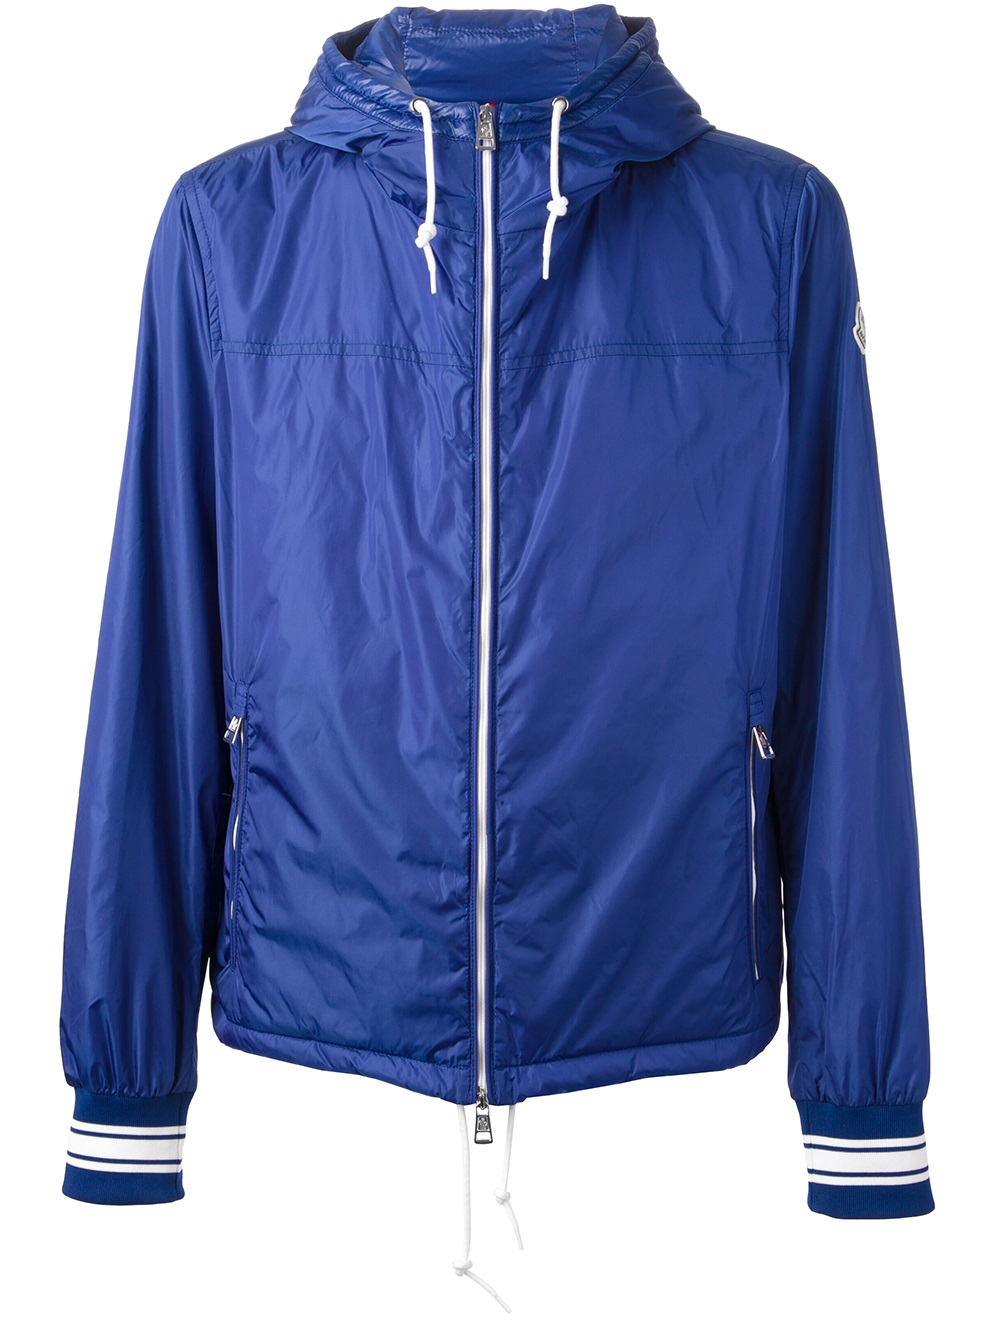 Lyst - Moncler Leandre Jacket in Blue for Men